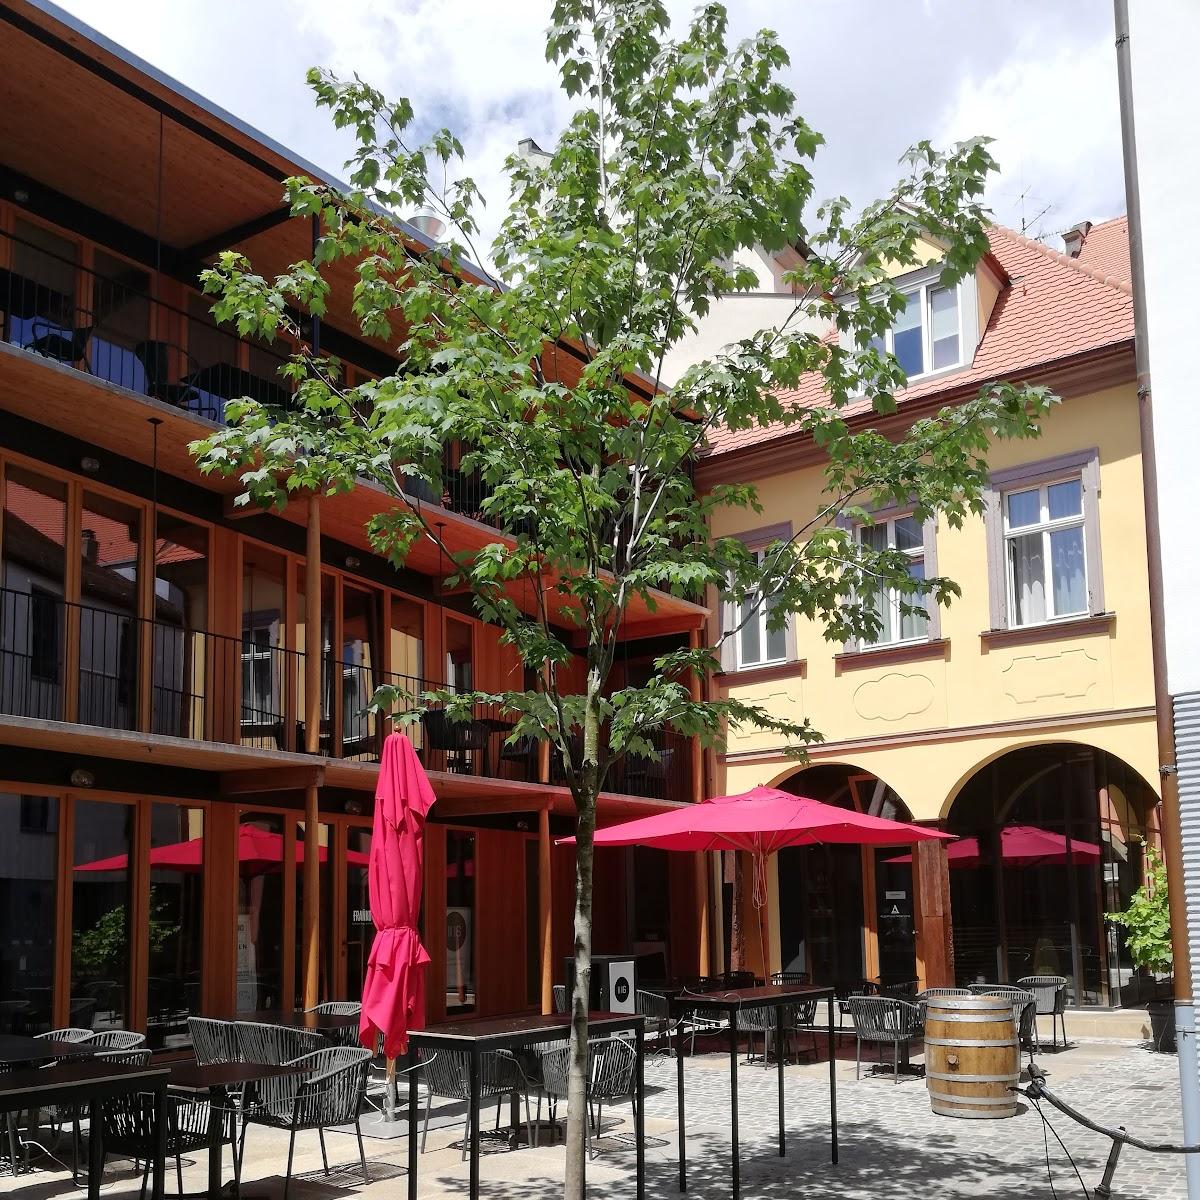 Restaurant "Beckstein-Kaffeehaus" in Bamberg